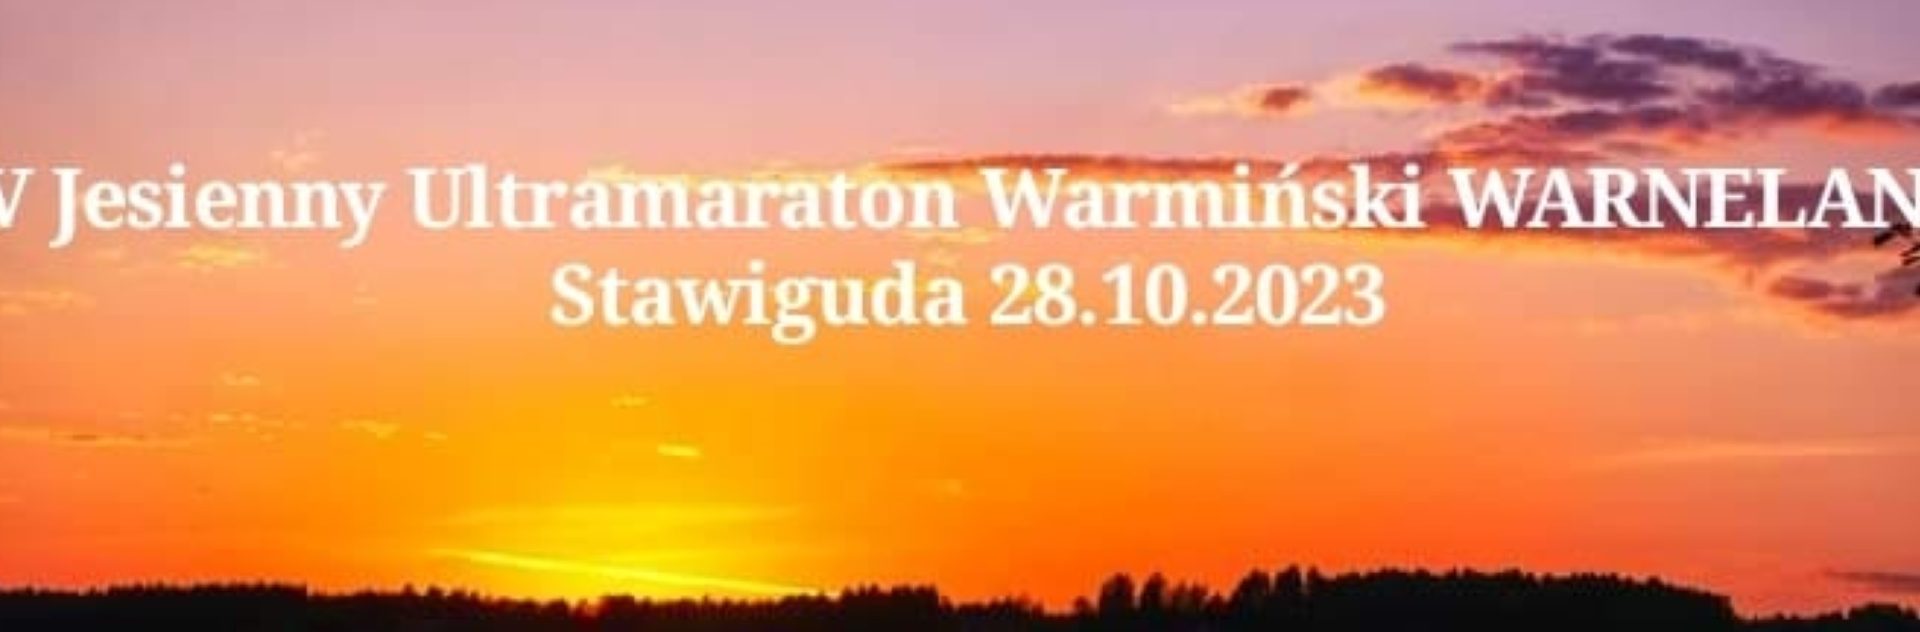 Plakat zapraszający w sobotę 28 października 2023 r. na 4. edycję Jesiennego Ultramaratonu Warmiński Warneland - Stawiguda 2023.